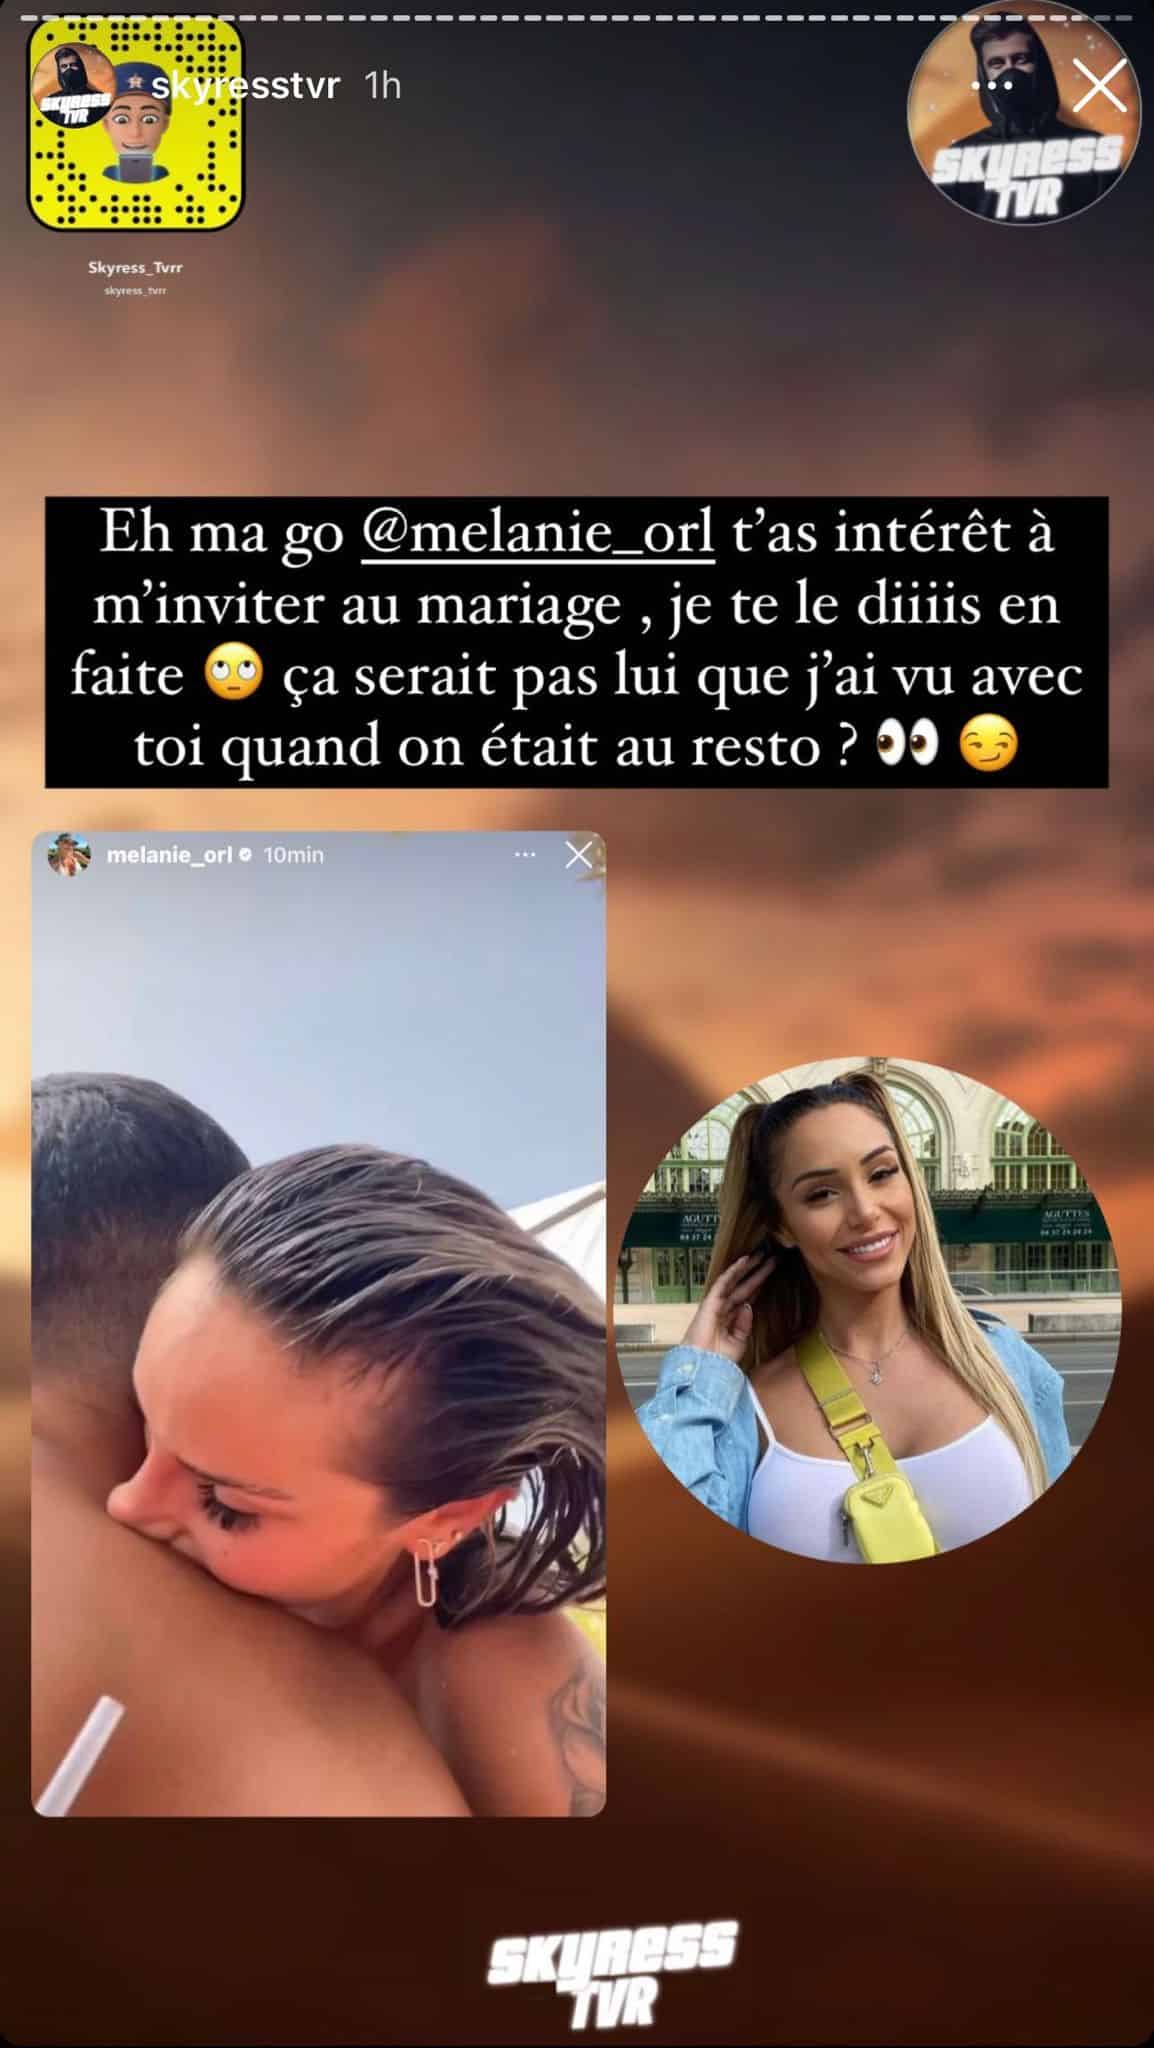 Mélanie Orl : en couple avec Emine, l’ex de Maissane ? Les internautes en sont sûrs